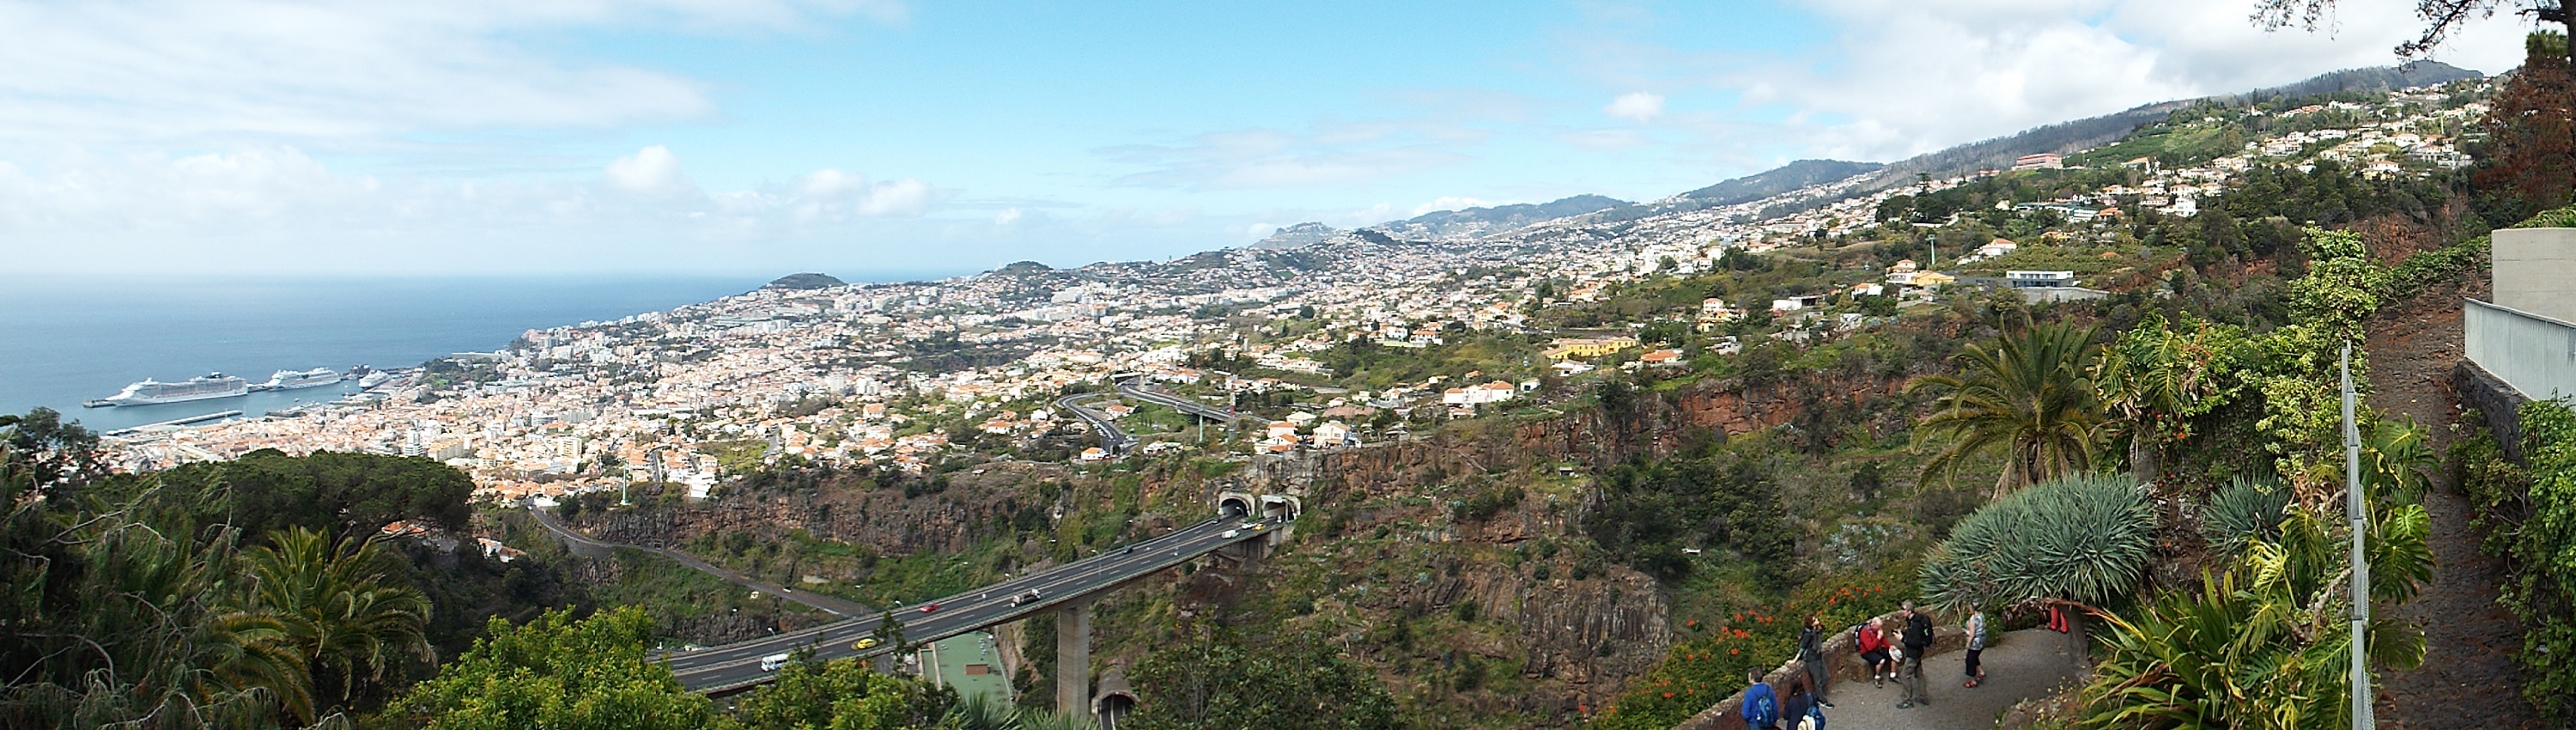 Funchal (Inselhauptstadt von Madeira )